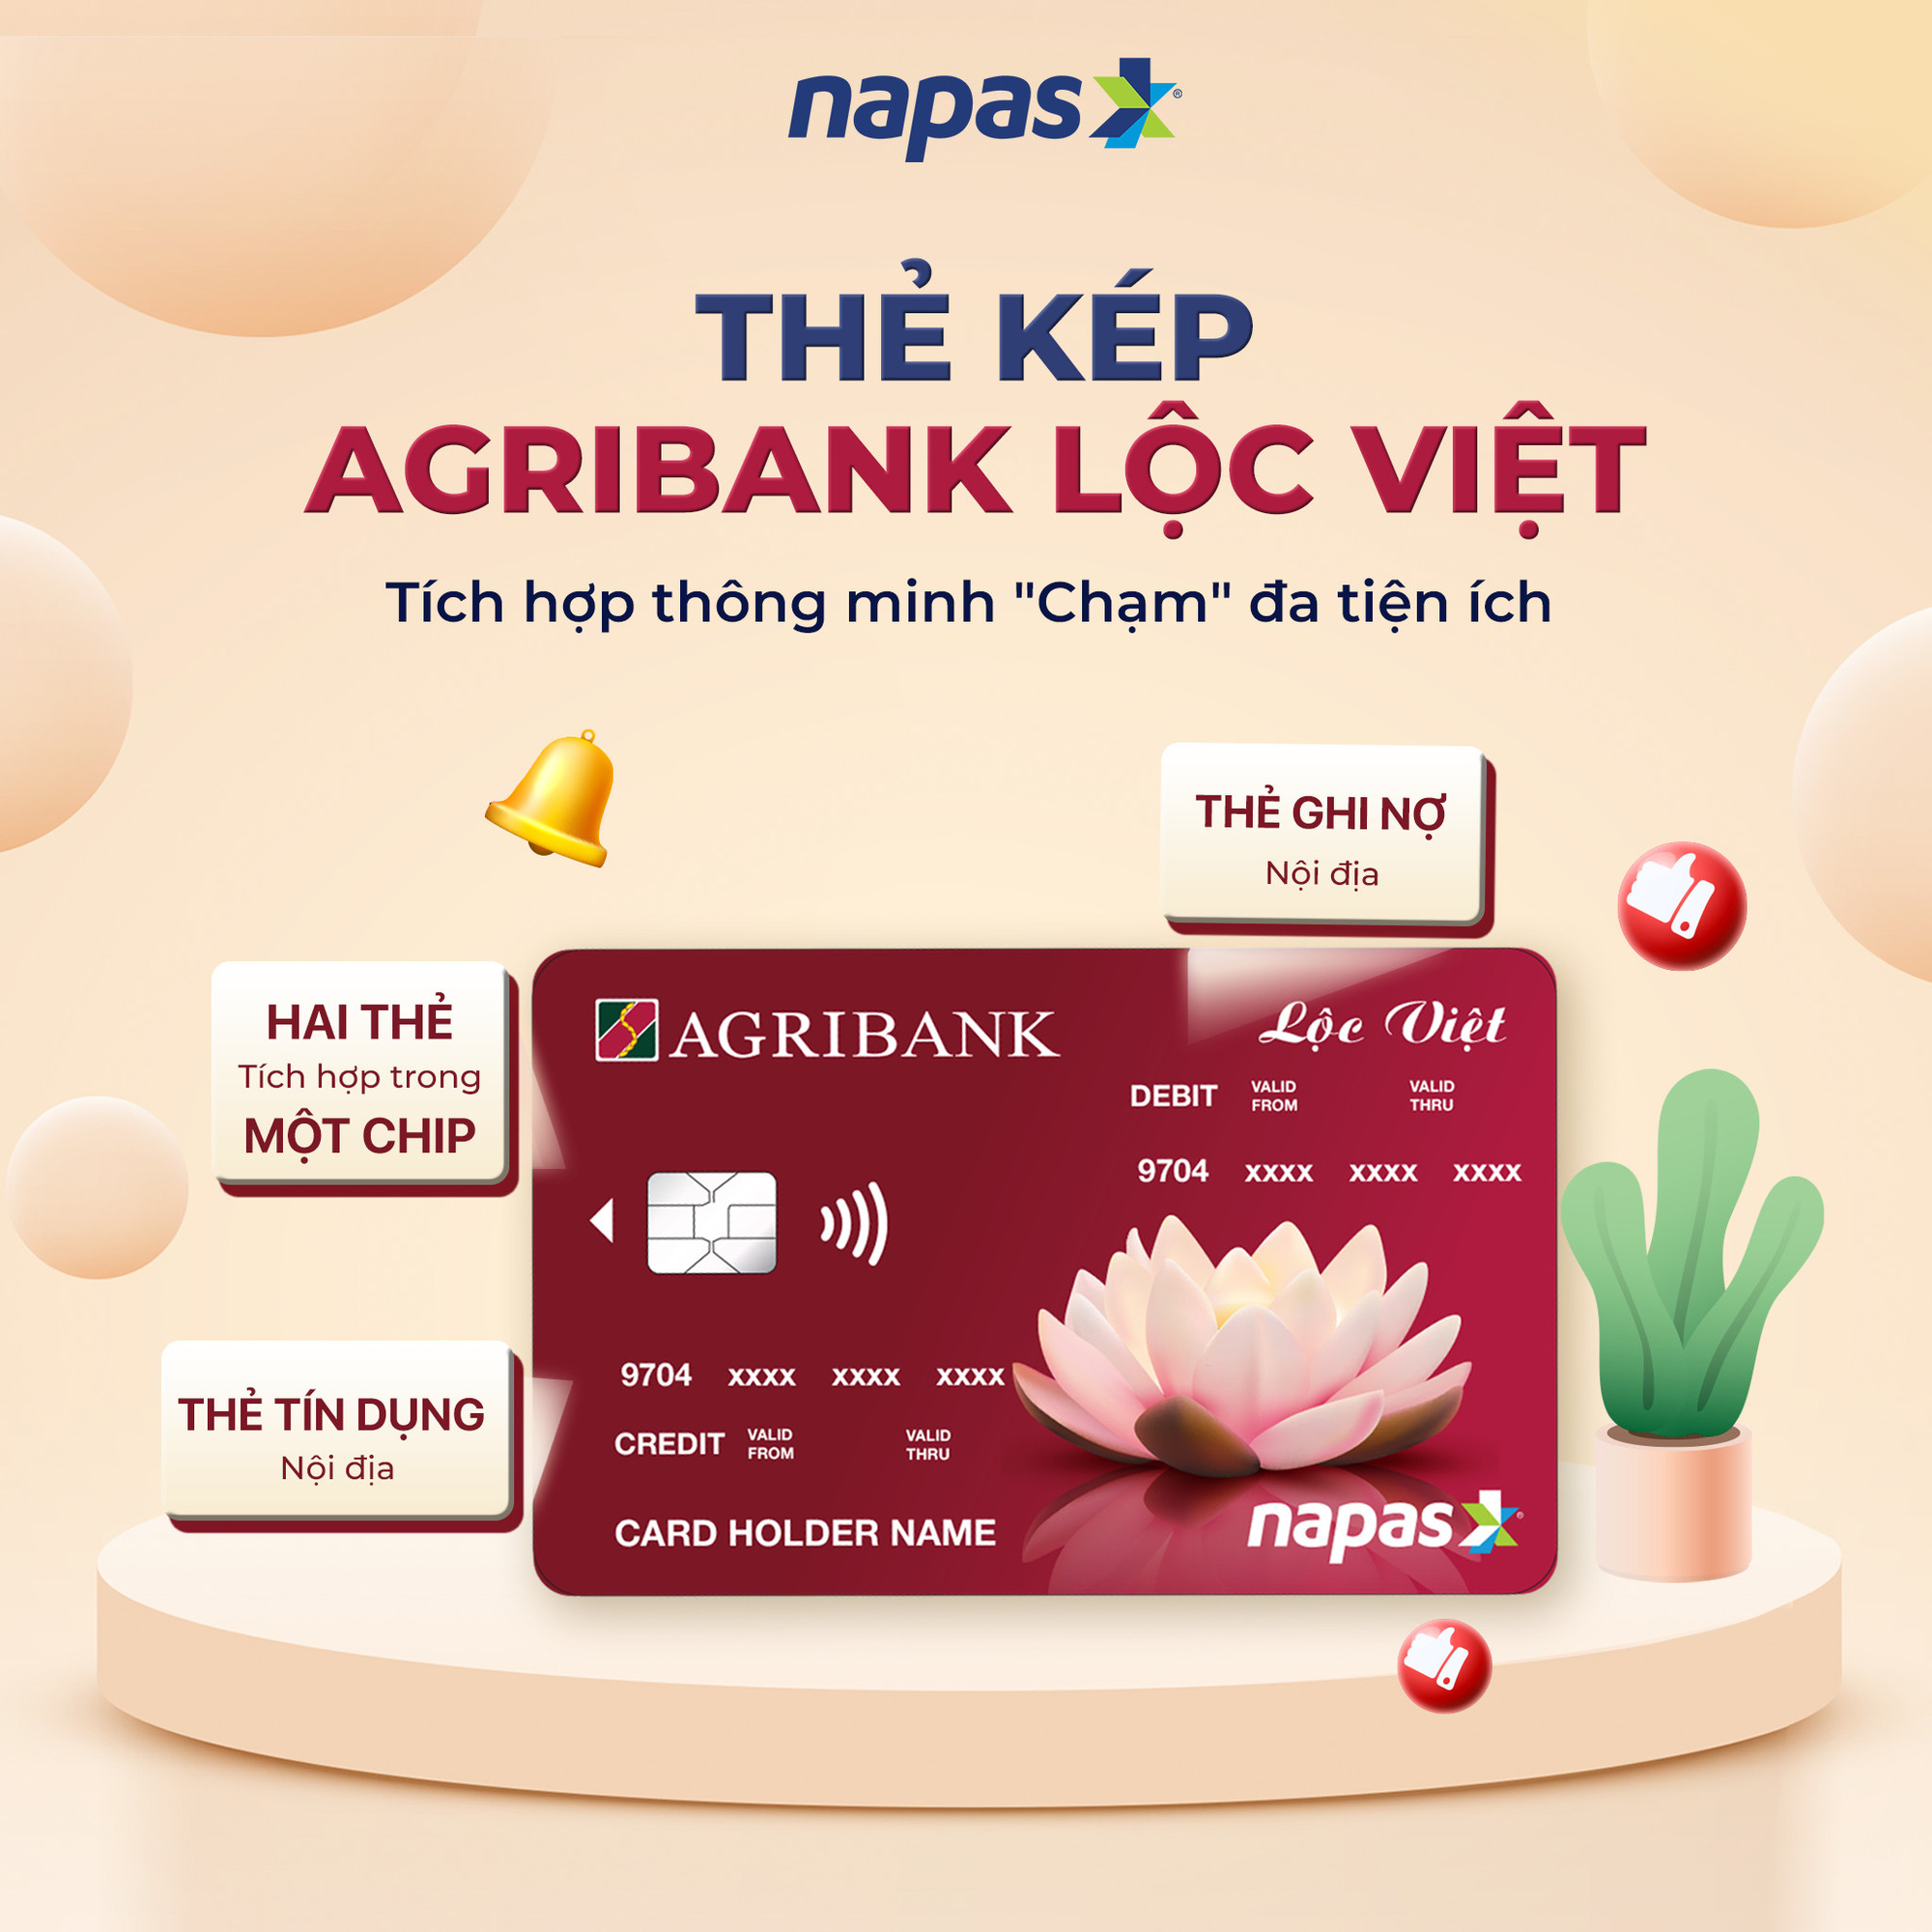 Thẻ kép 2 trong 1 Agribank vừa là thẻ ATM, vừa là thẻ tín dụng, cho phép bạn sử dụng linh hoạt với phạm vi rộng lớn. Hãy xem hình ảnh liên quan để hiểu rõ hơn về sản phẩm độc đáo này.